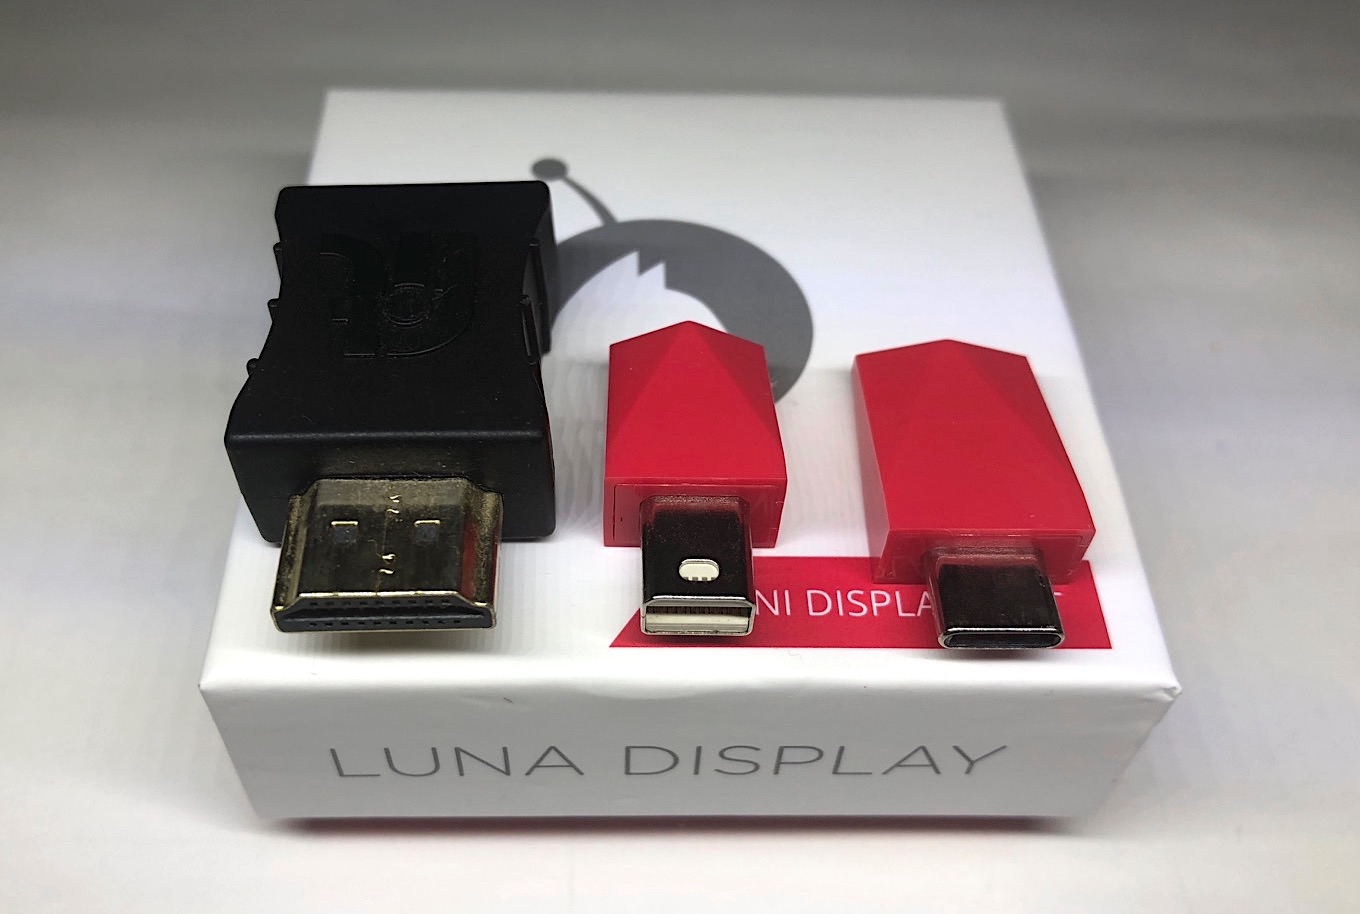 Luna display Mini DisplayPort